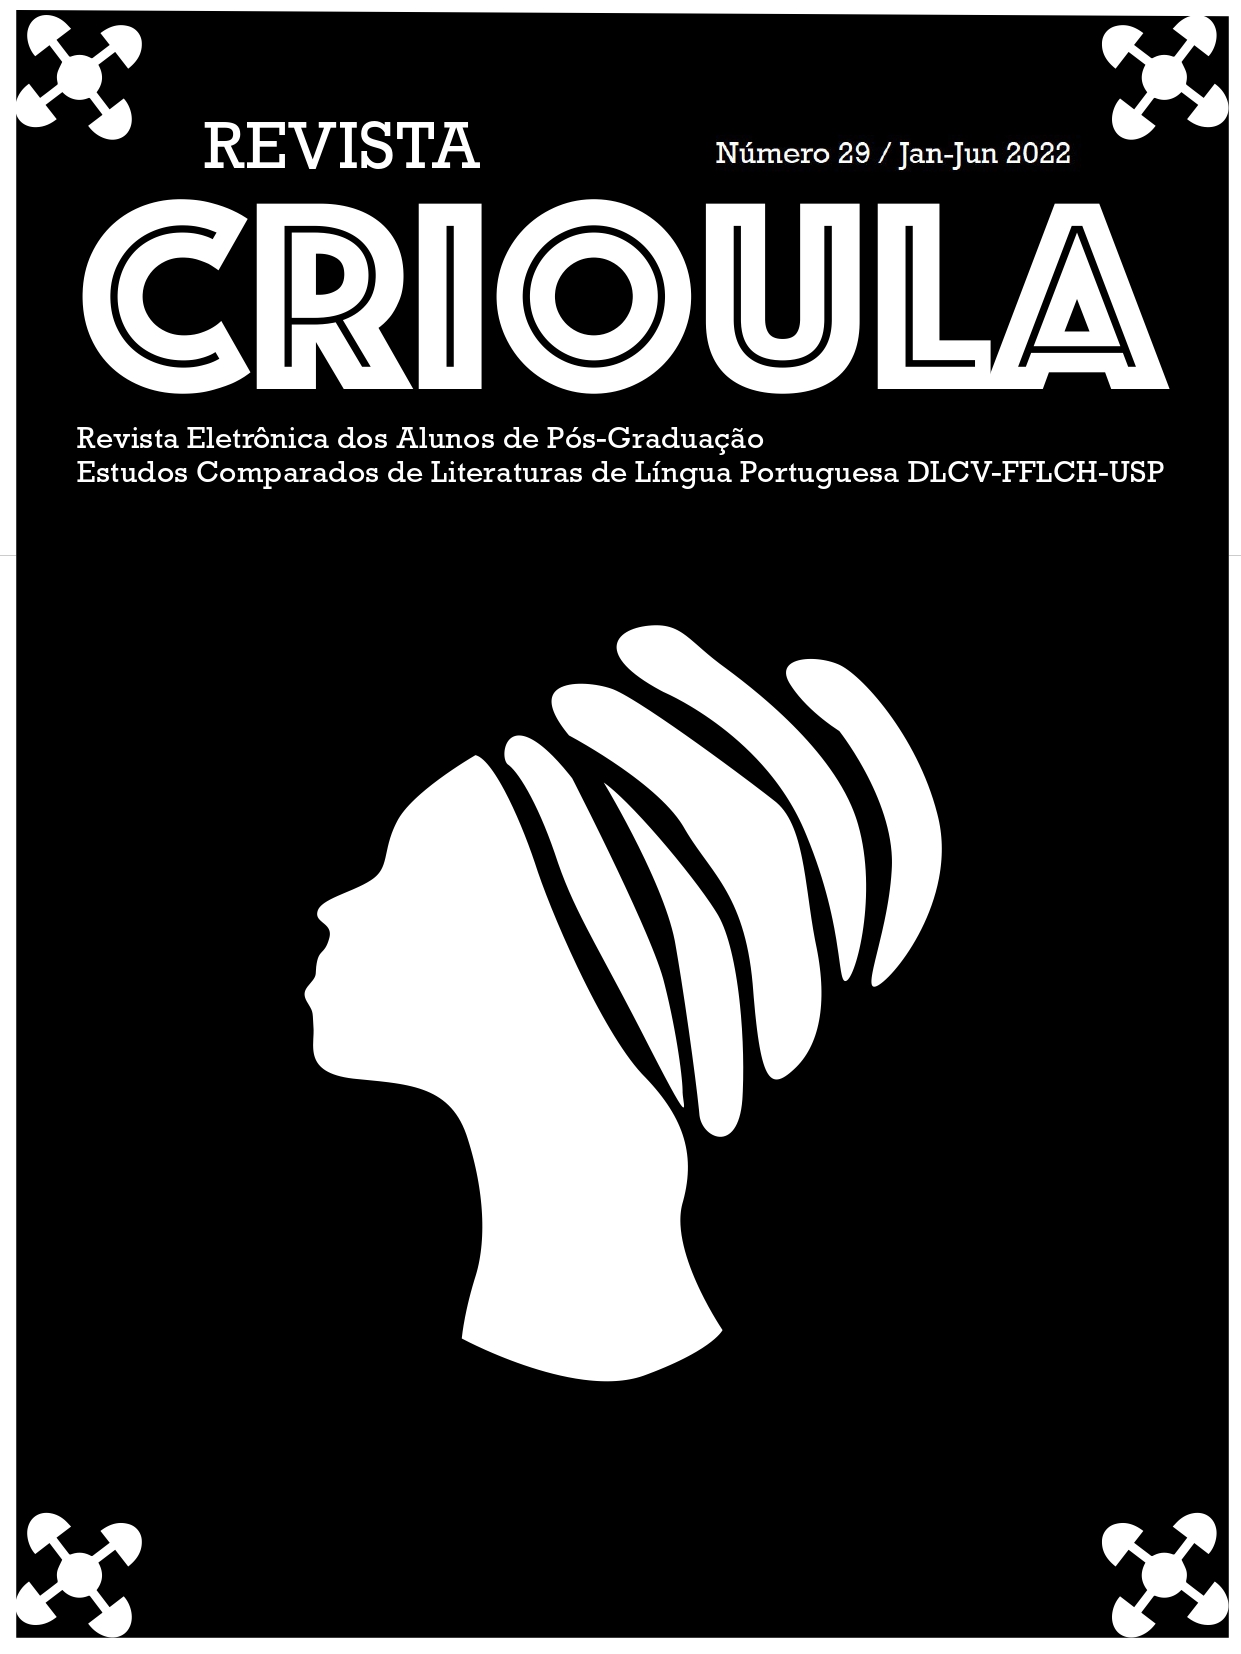 Capa da Revista Crioula, que traz a silhueta de uma mulher vestindo turbante ao centro, em branco, sobre um fundo preto.